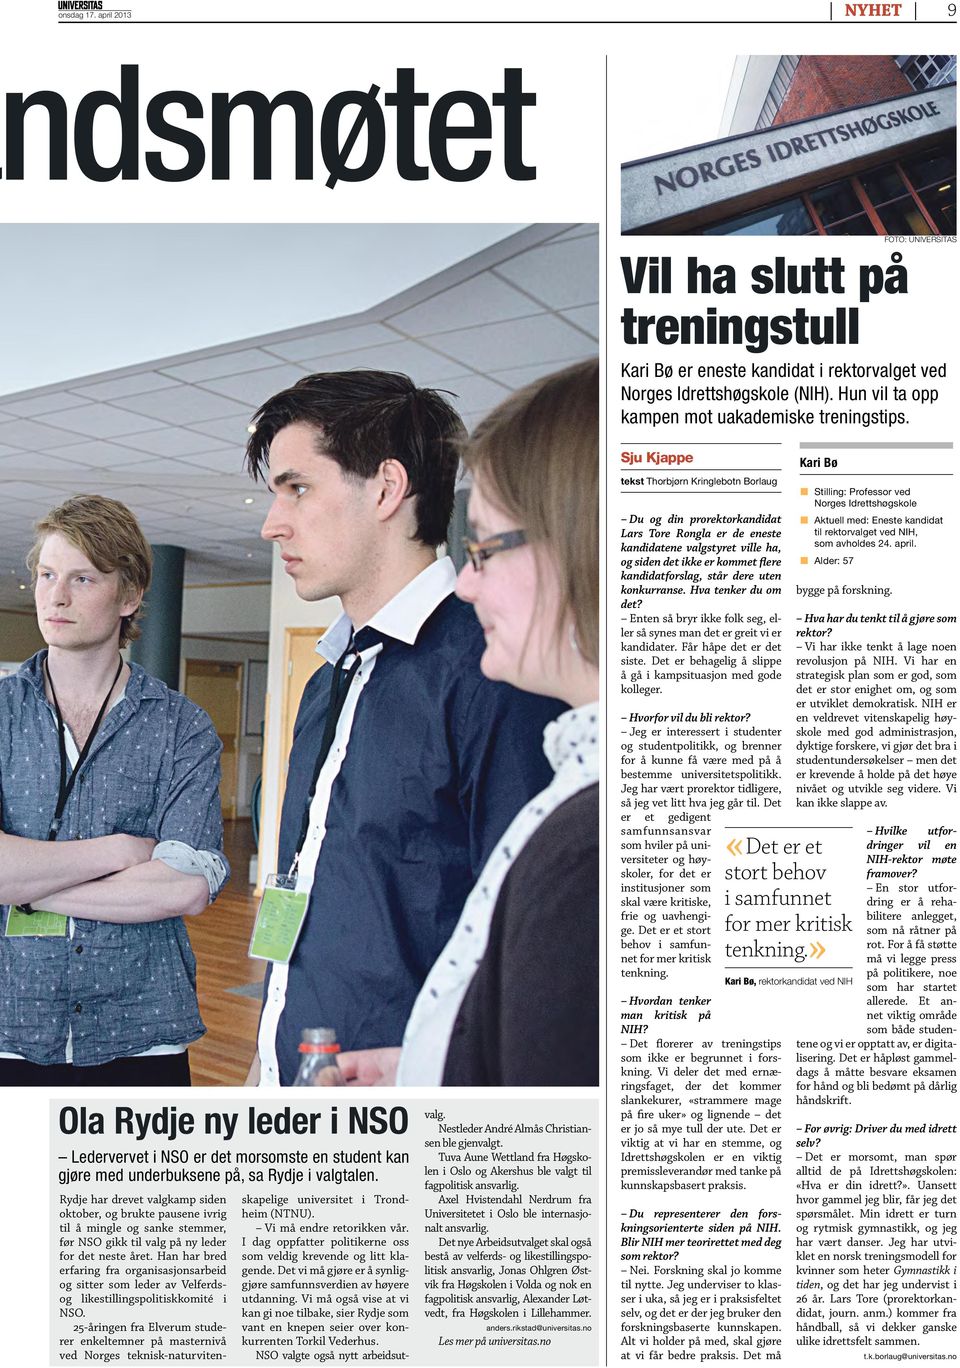 Rydje har drevet valgkamp siden oktober, og brukte pausene ivrig til å mingle og sanke stemmer, før NSO gikk til valg på ny leder for det neste året.